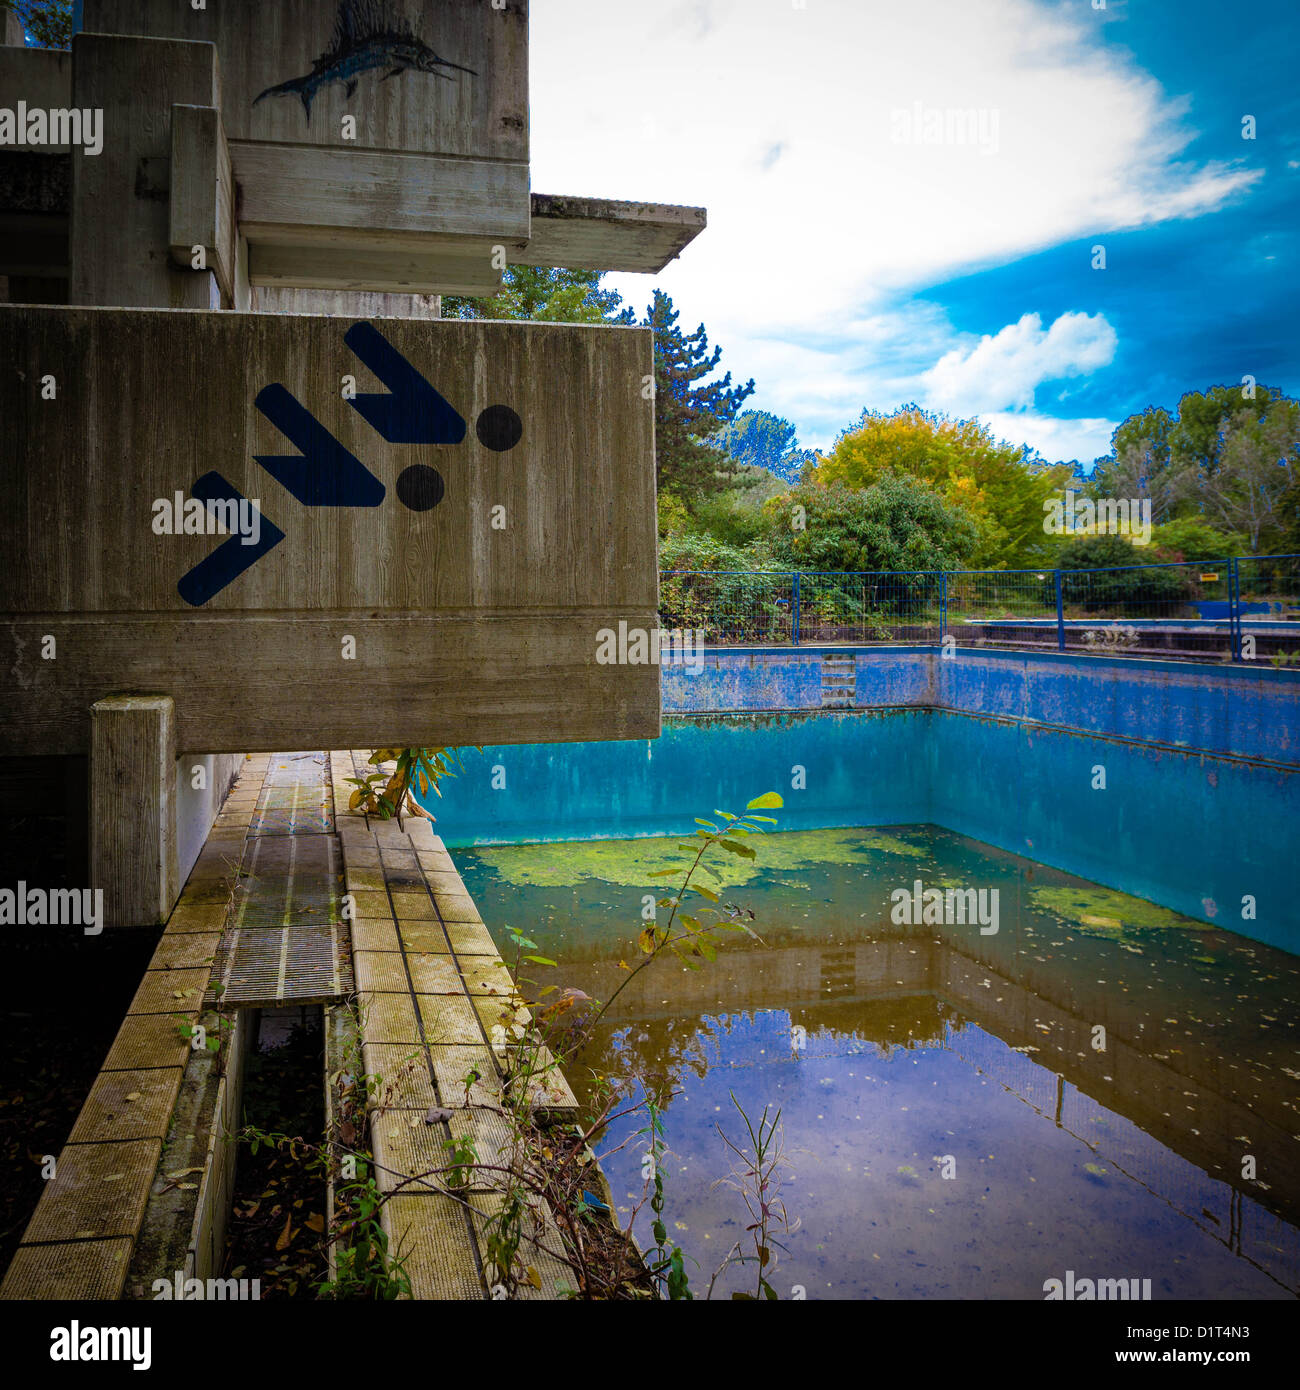 Rovina dell'ex piscina d'onde a Grevenbroich, Germania Foto Stock